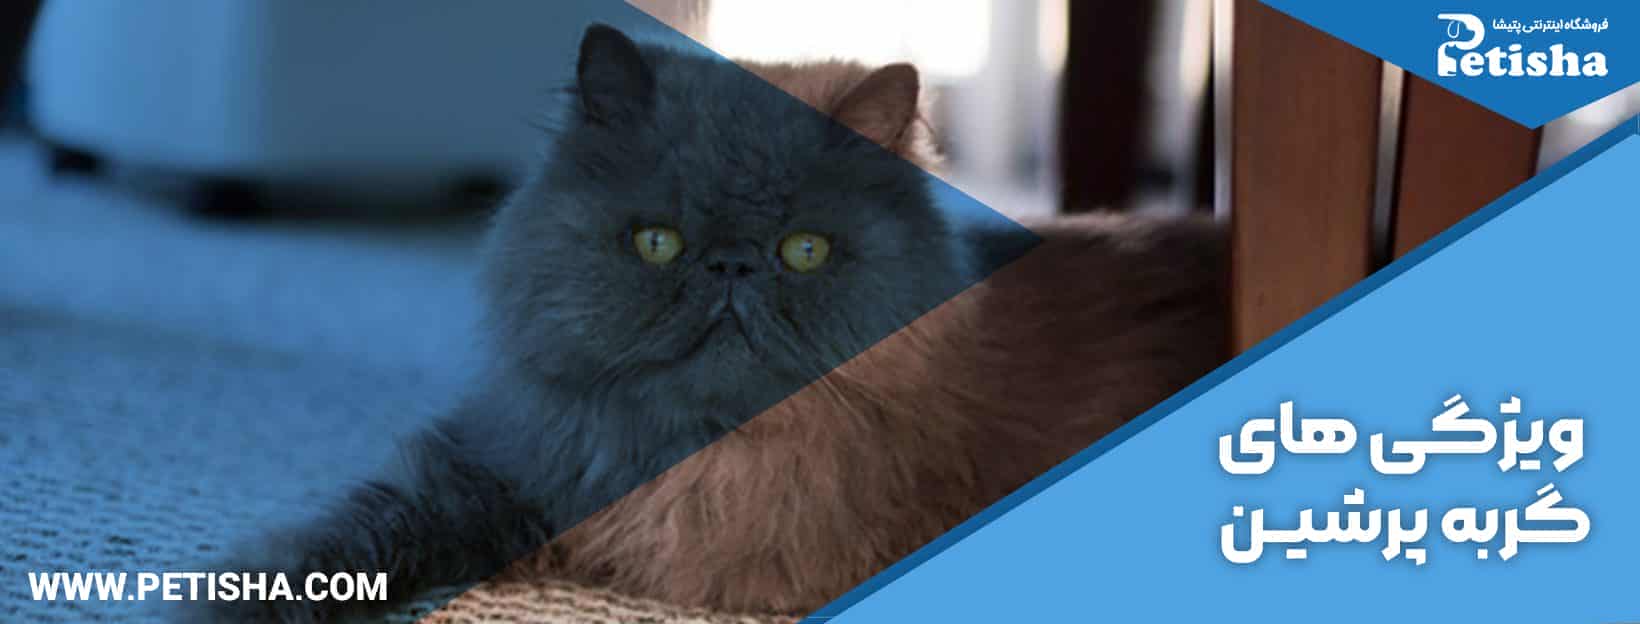 نگهداری گربه پرشین | نحوه نگهداری و خصوصیات انواع گربه پرشین